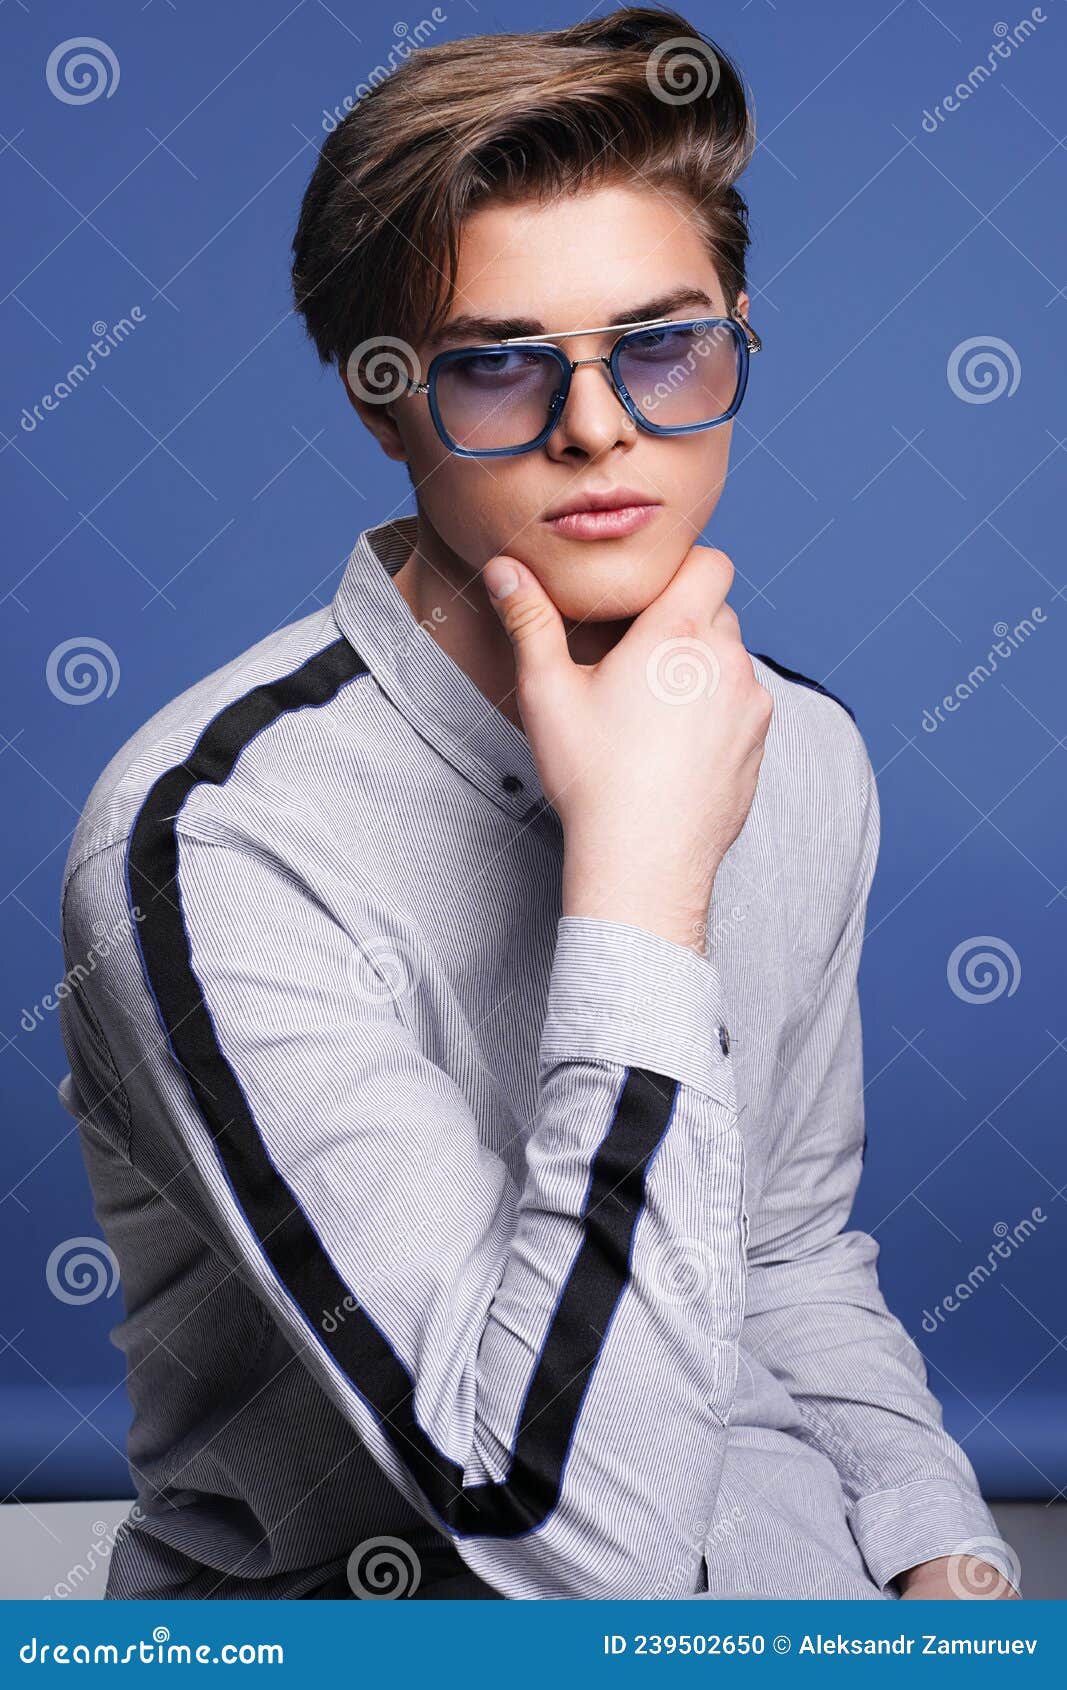 https://thumbs.dreamstime.com/z/mens-accessoires-optique-hipster-jeune-homme-assis-en-chemise-dans-des-lunettes-de-soleil-design-portrait-studio-et-modernes-coupe-239502650.jpg